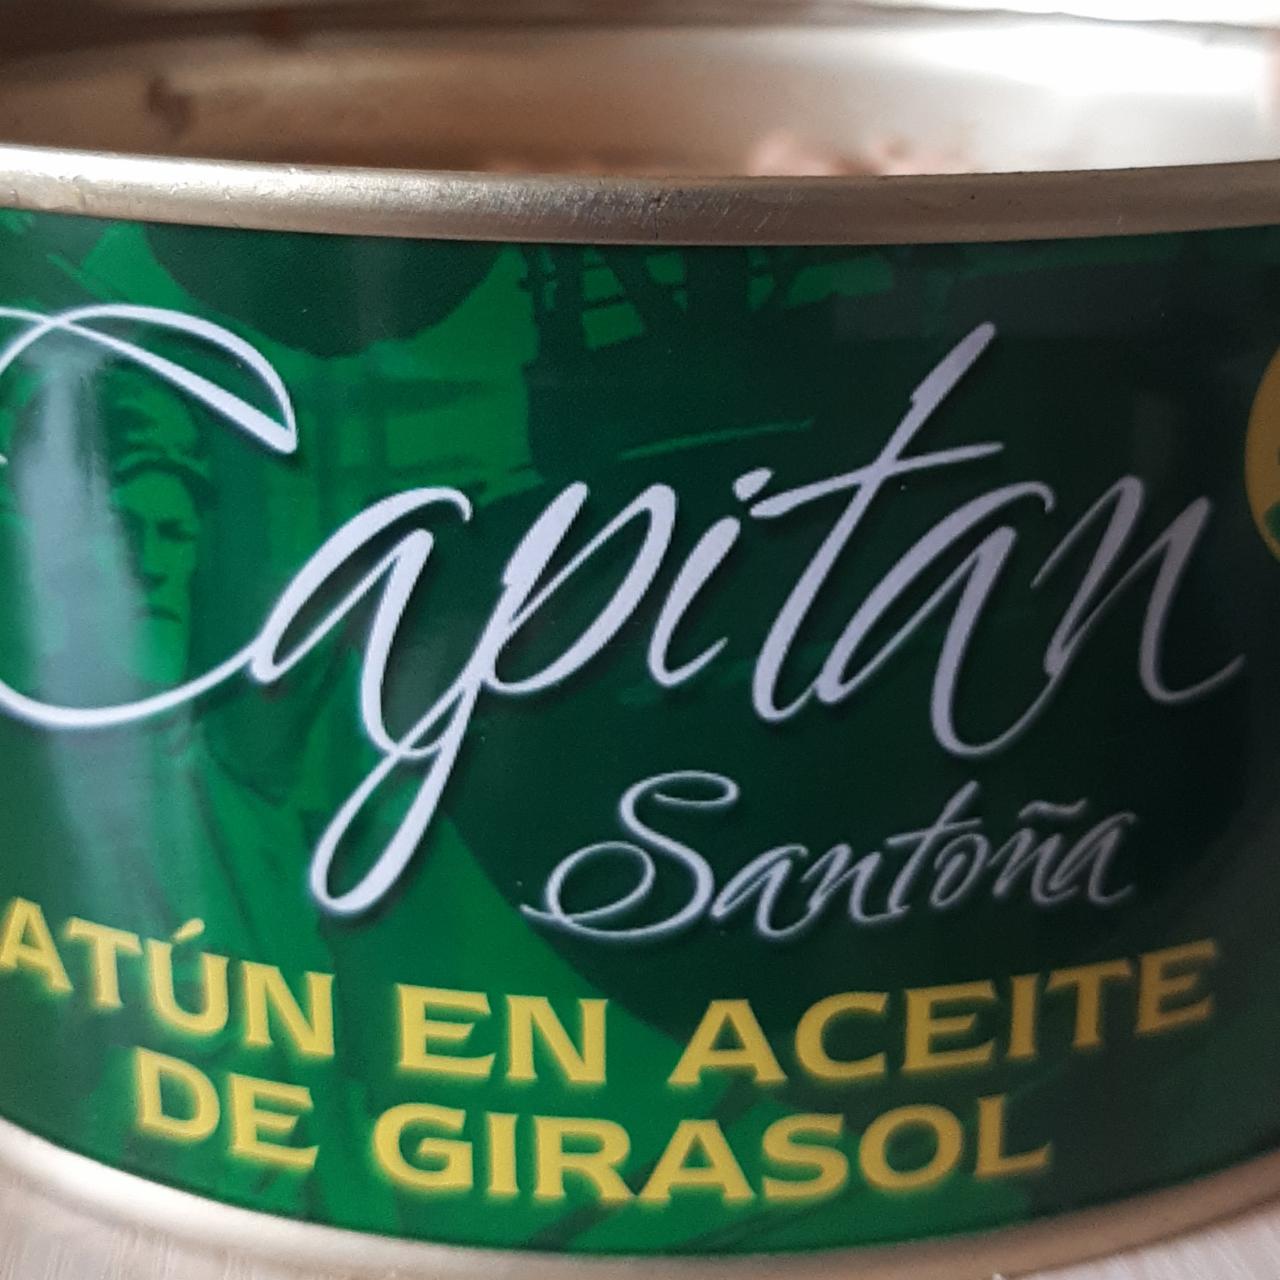 Fotografie - Atún en aceite de girasol Capitan Santoña